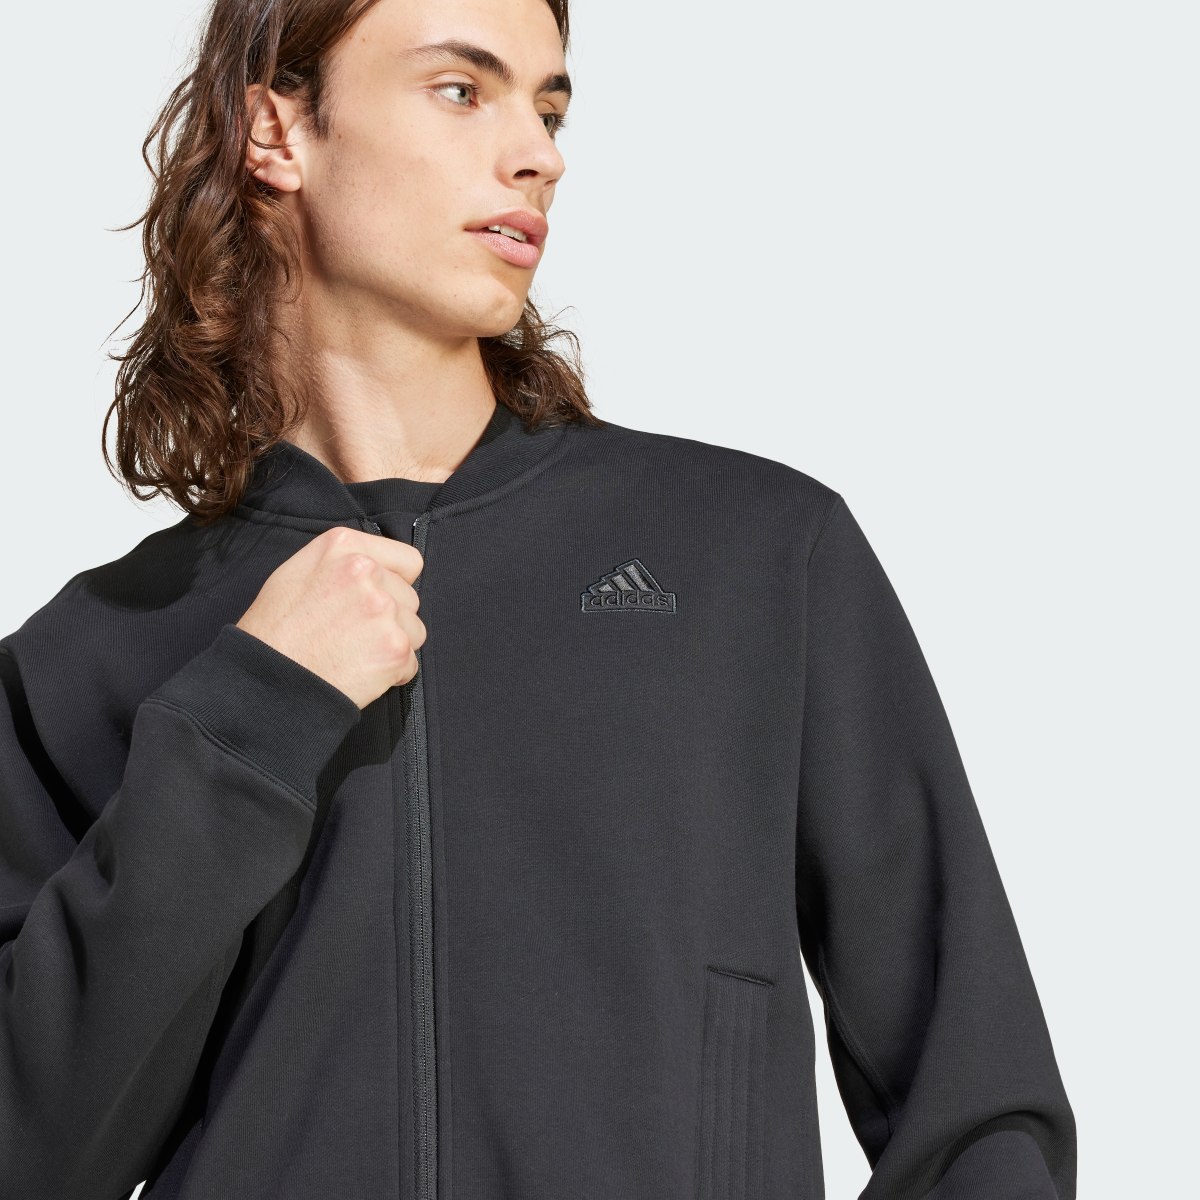 Adidas Lounge Fleece Bomber Jacket With Zip Opening. 6